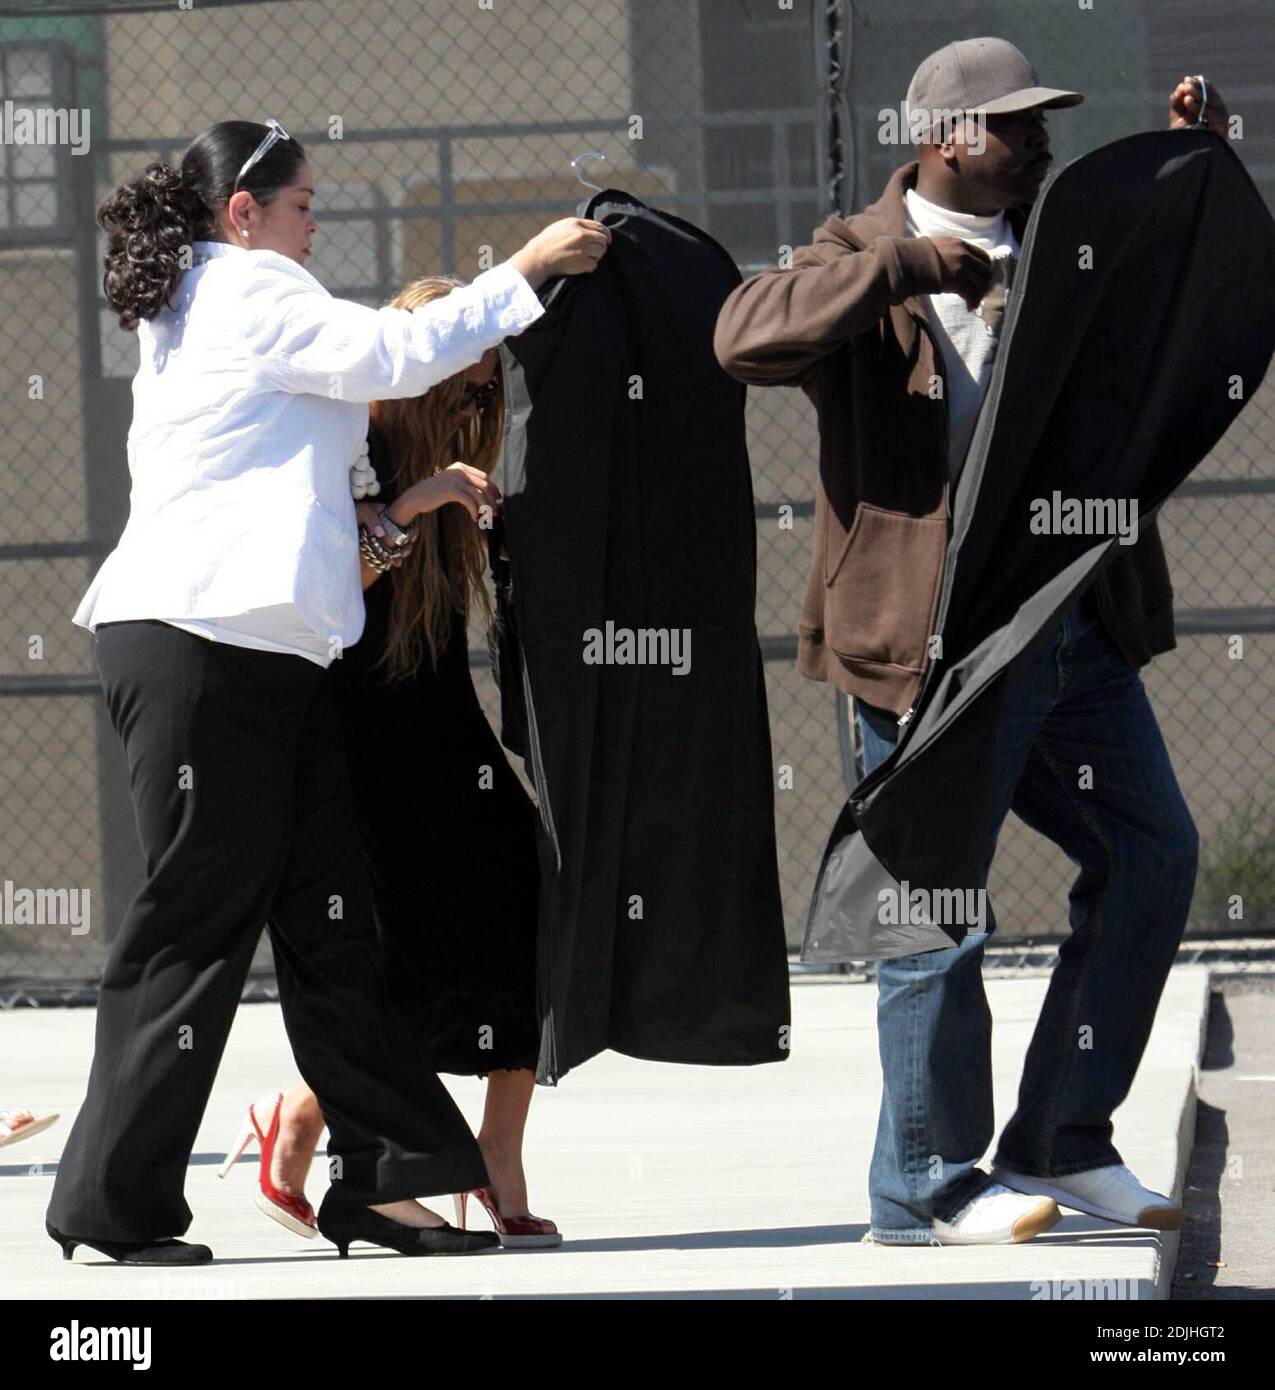 Mary Kate Olsen tente d'éviter les photographes après une frénésie de shopping à Maxfields à West Hollywood, CA. 4/19/06 Banque D'Images